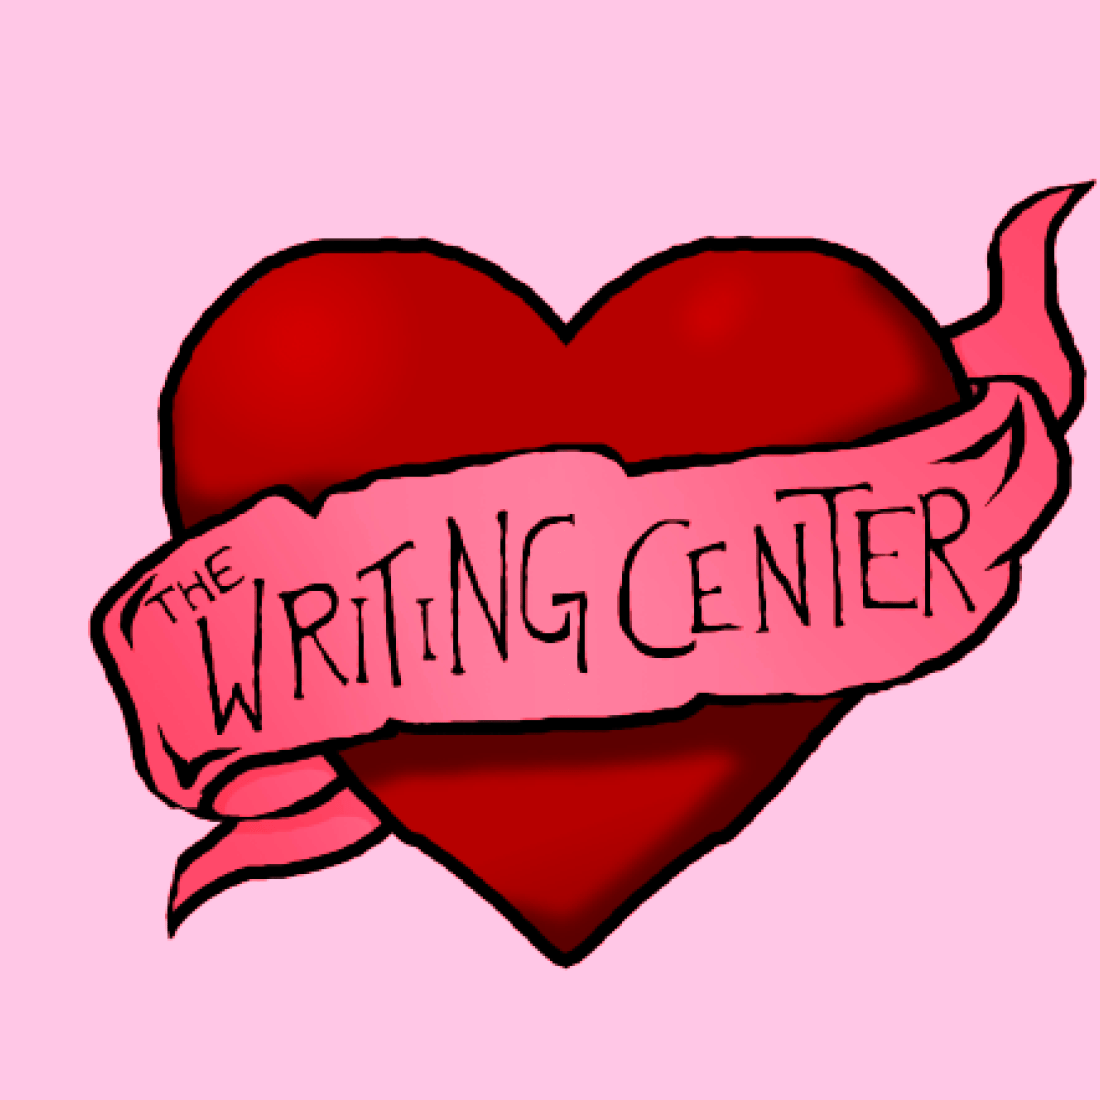 Writing Center heart